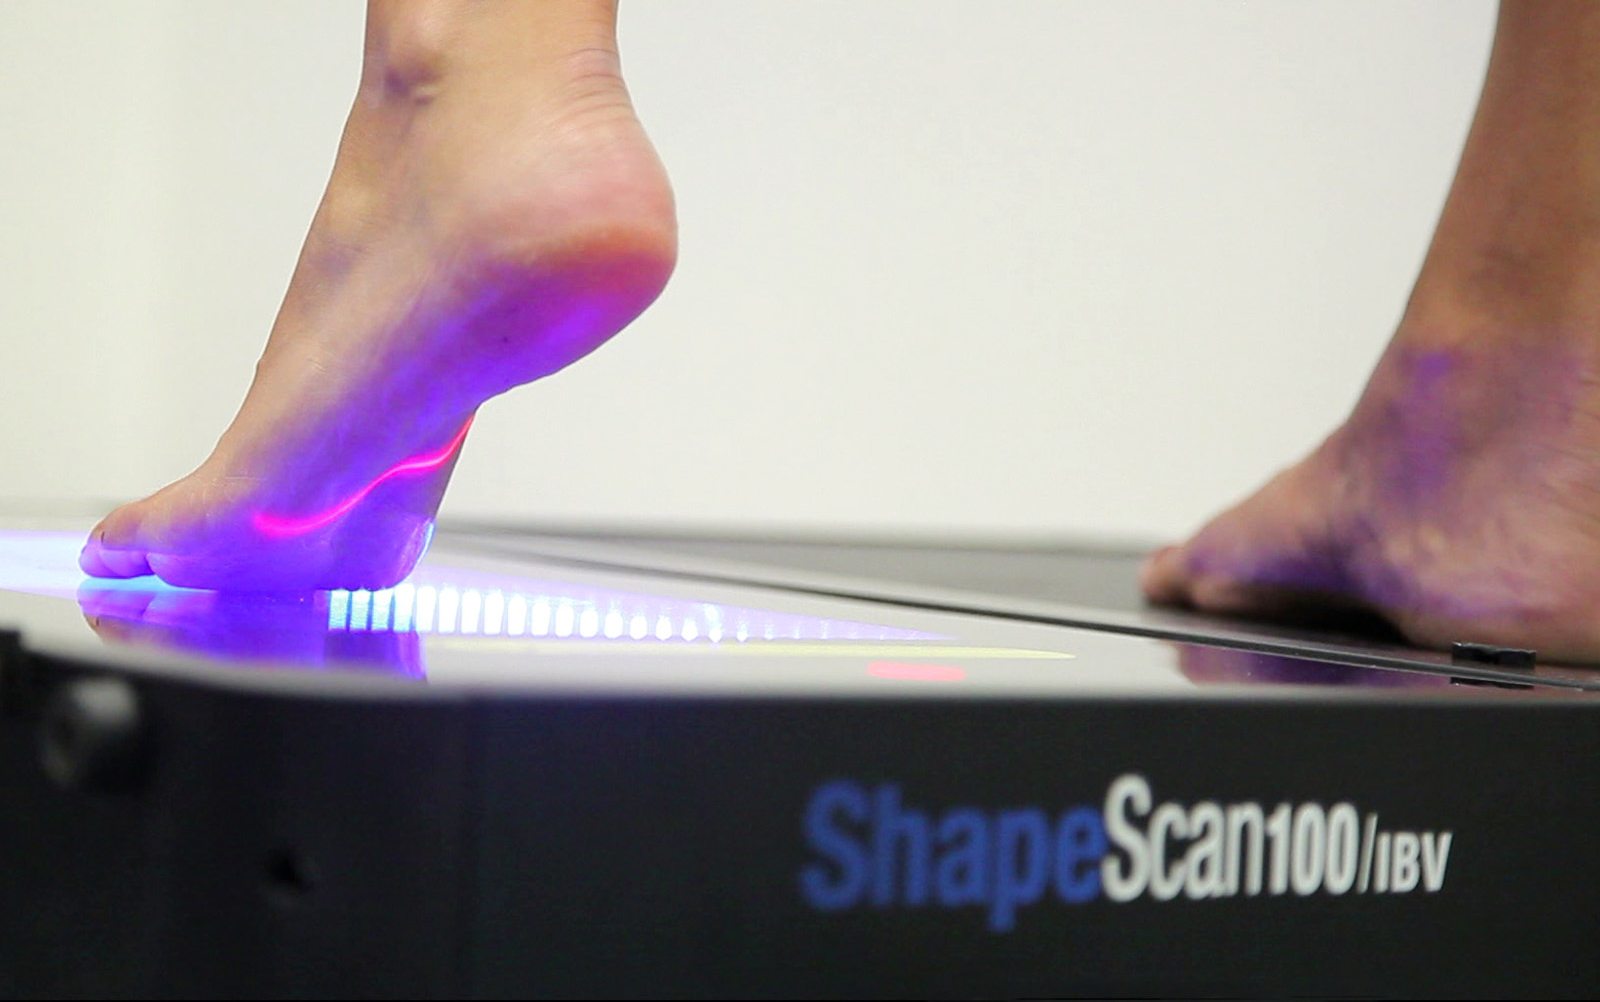 Fotografía en detalle de unos pies siendo escaneados por ShapeScan100/IBV